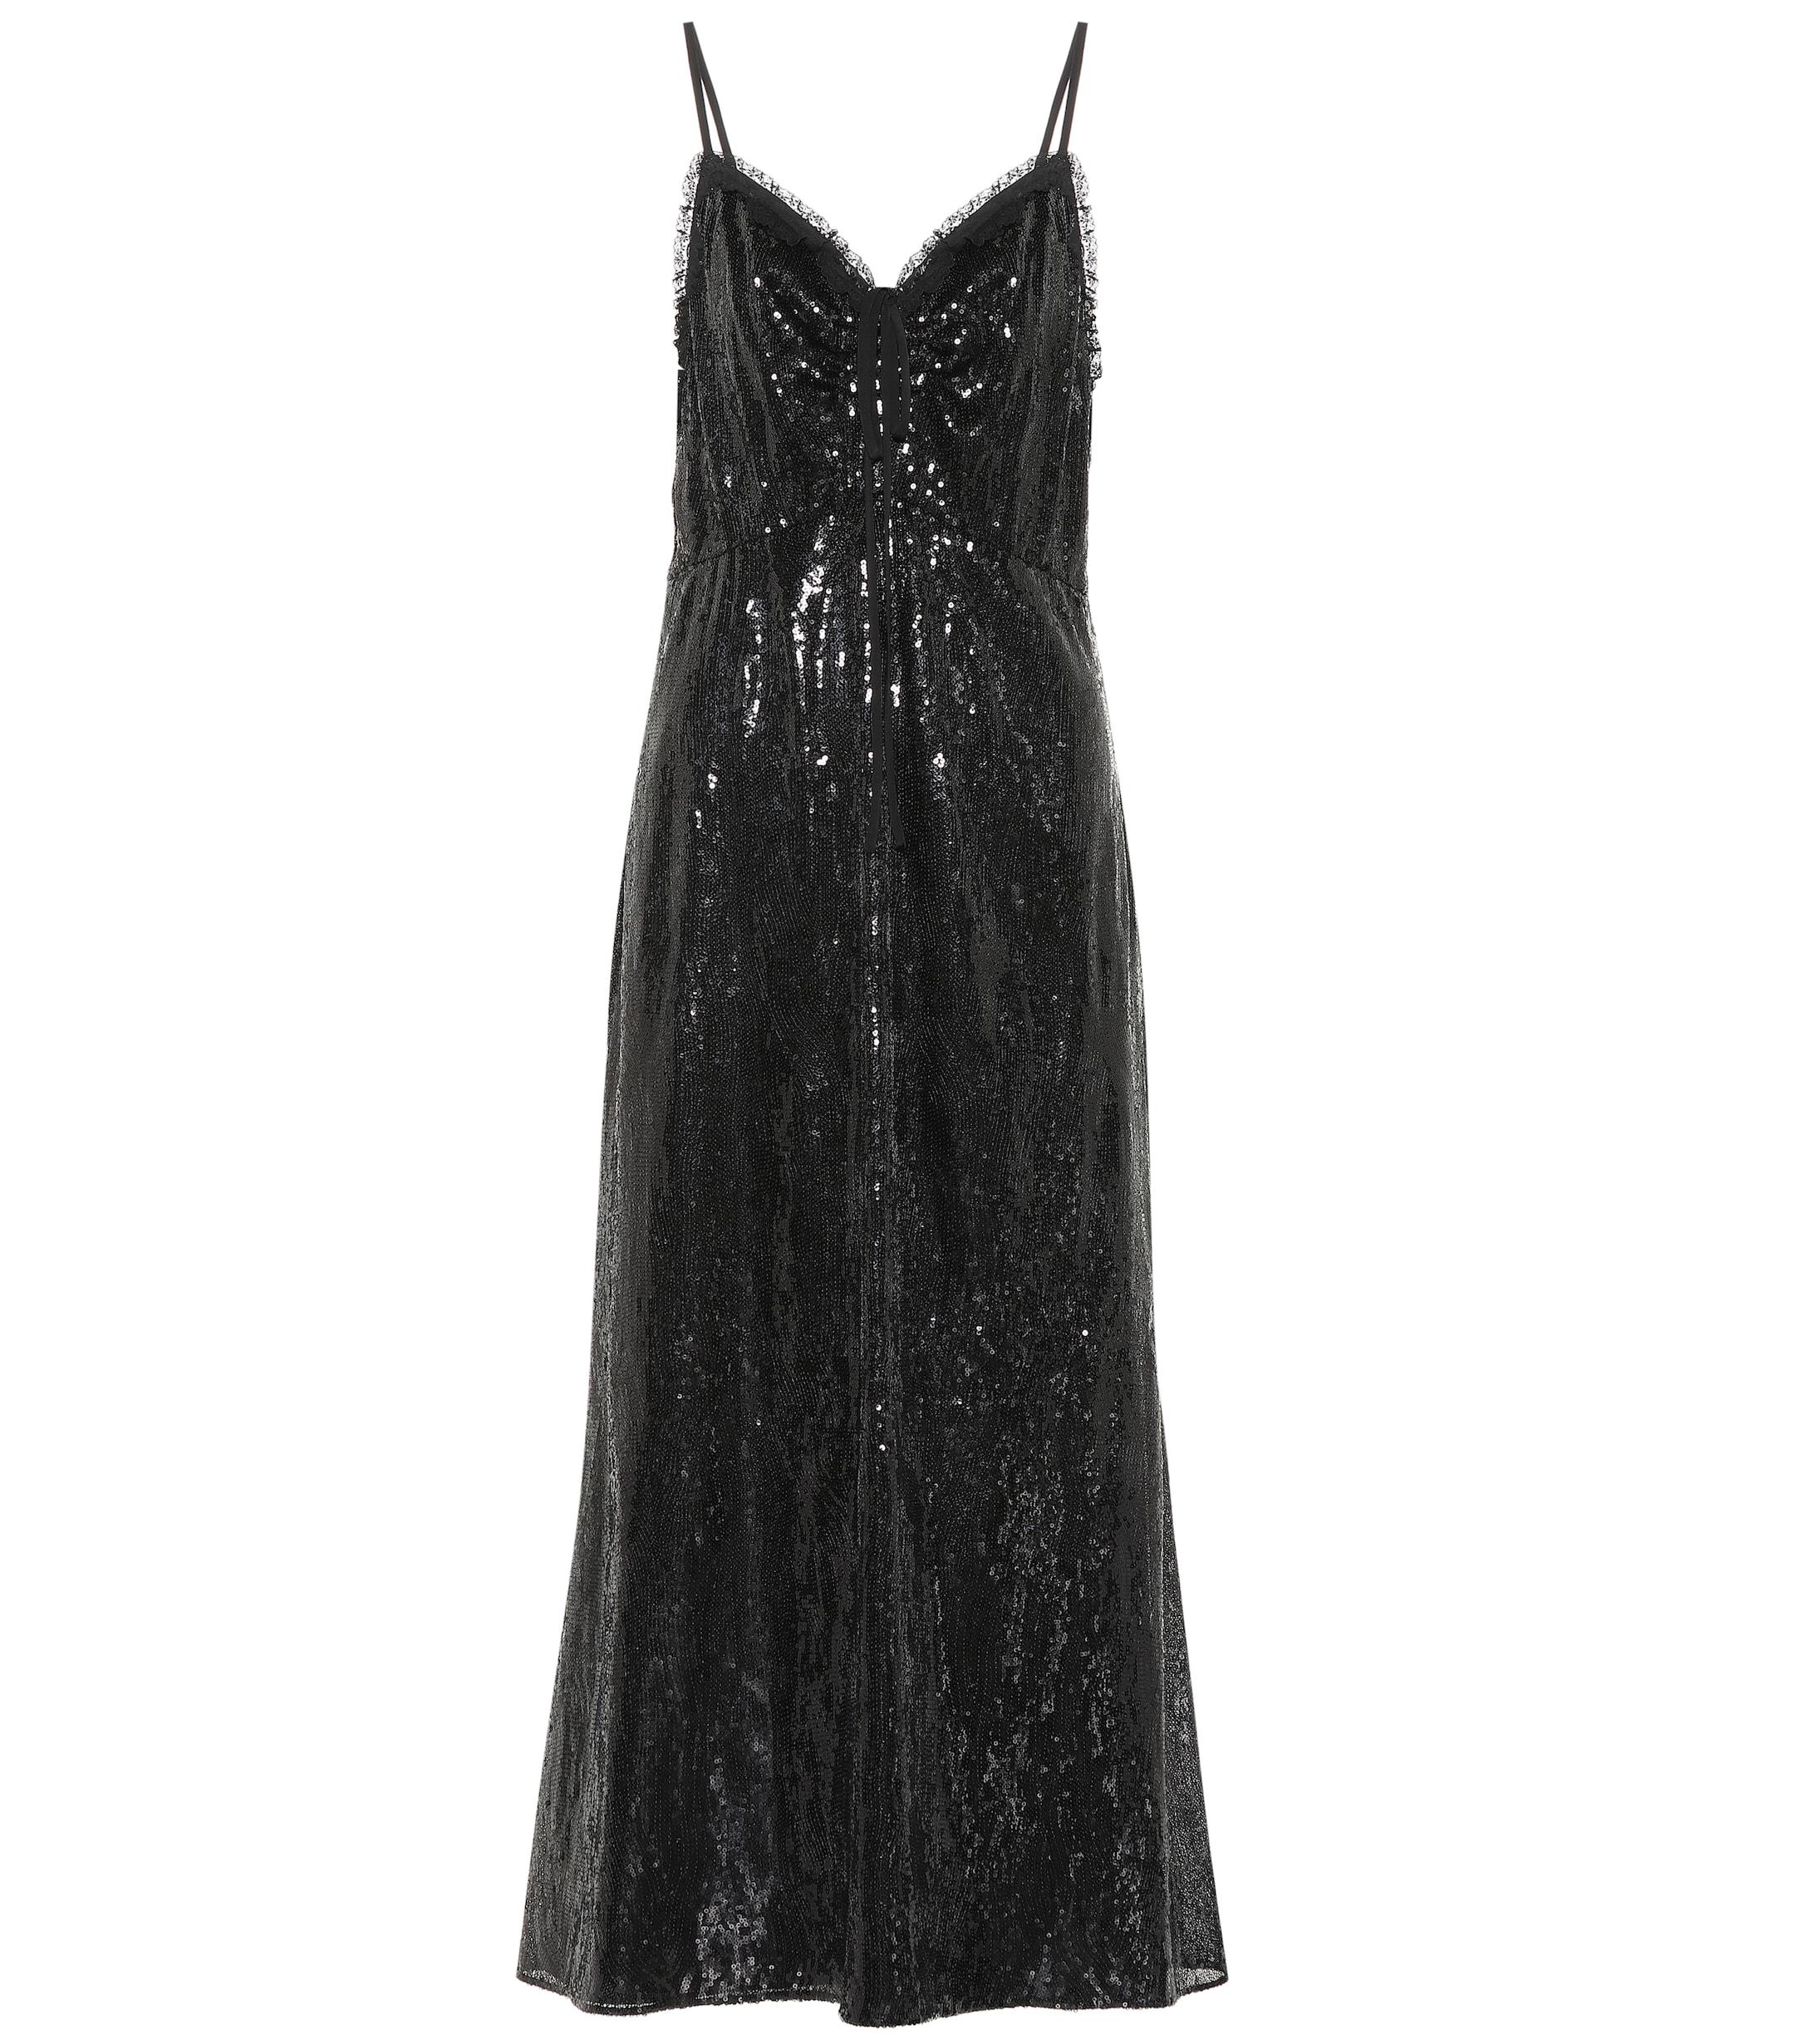 Miu Miu Sequined Midi Dress in Black - Lyst